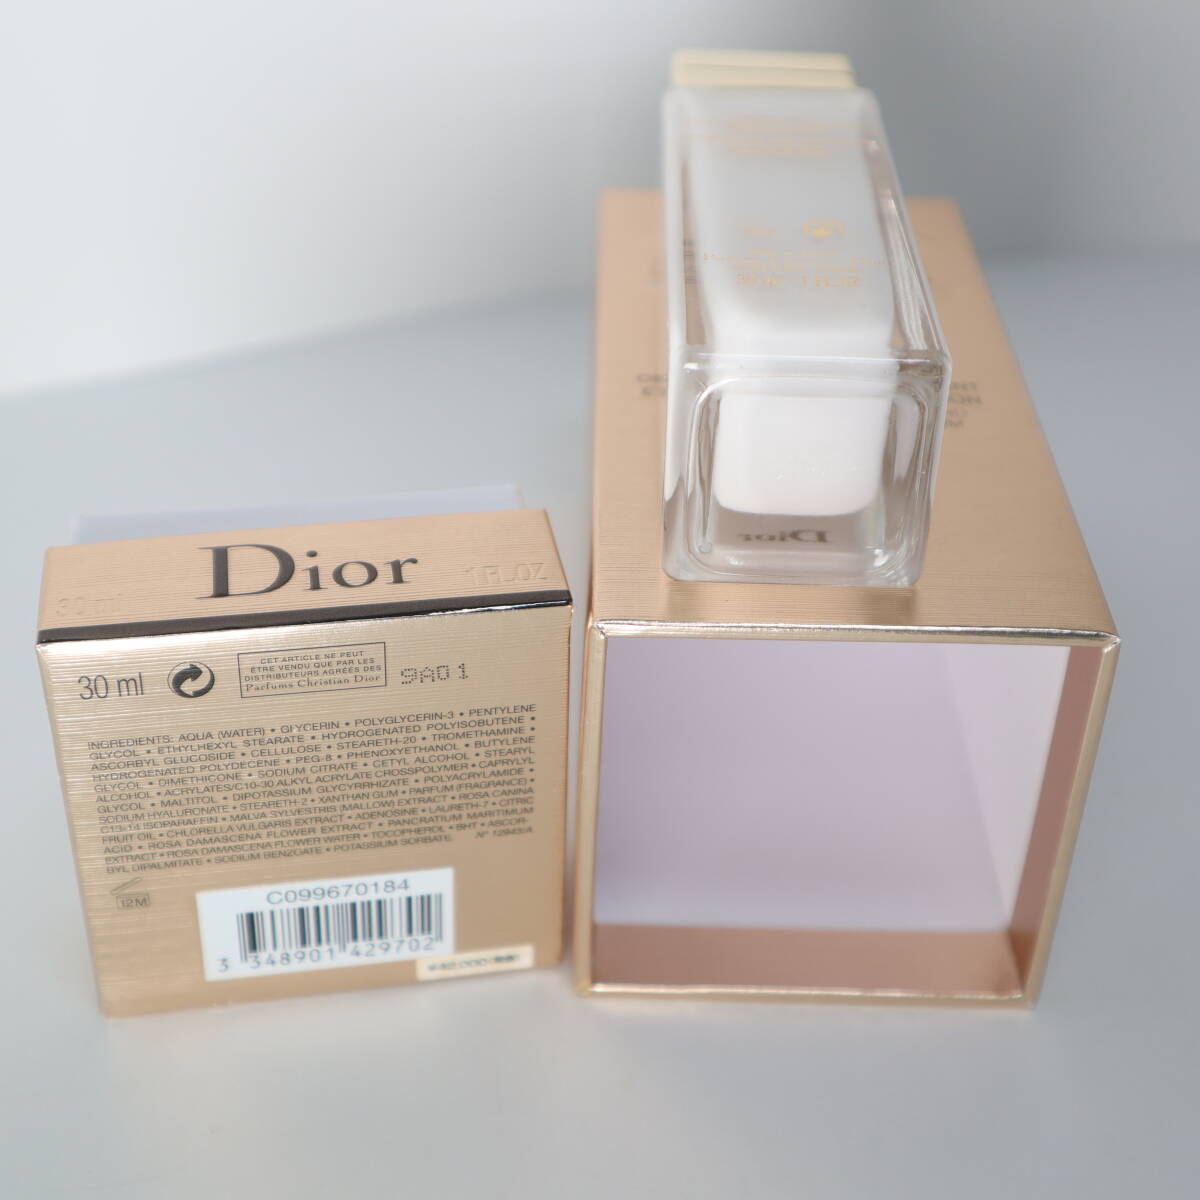  Dior Dior prestige white laso dragon shon lumiere medicine for beauty care liquid 30ml unused 